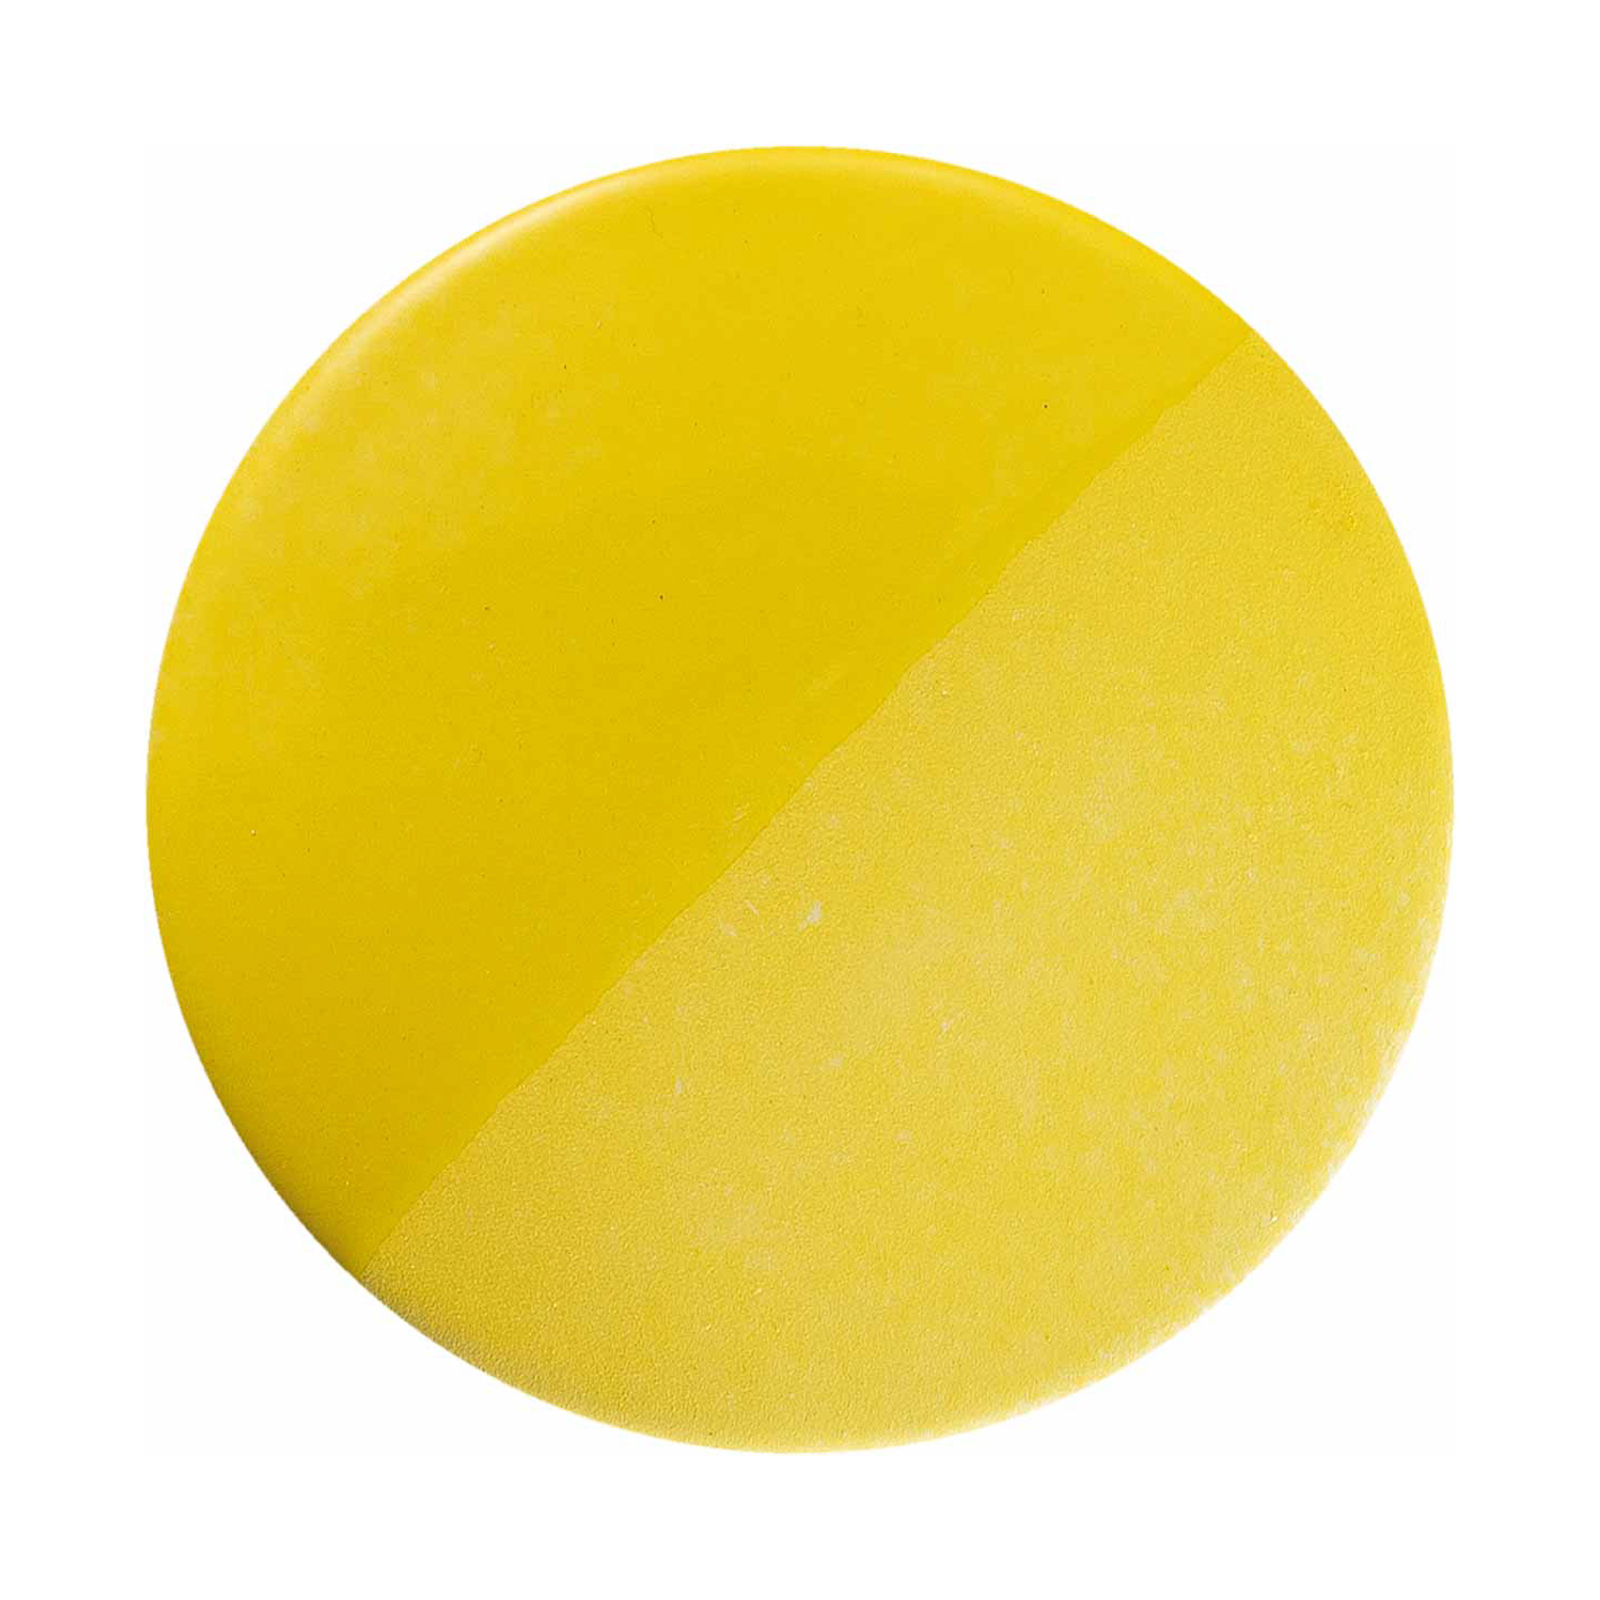 Riippuvalo Bellota keramiikkaa, Ø 35 cm, keltainen